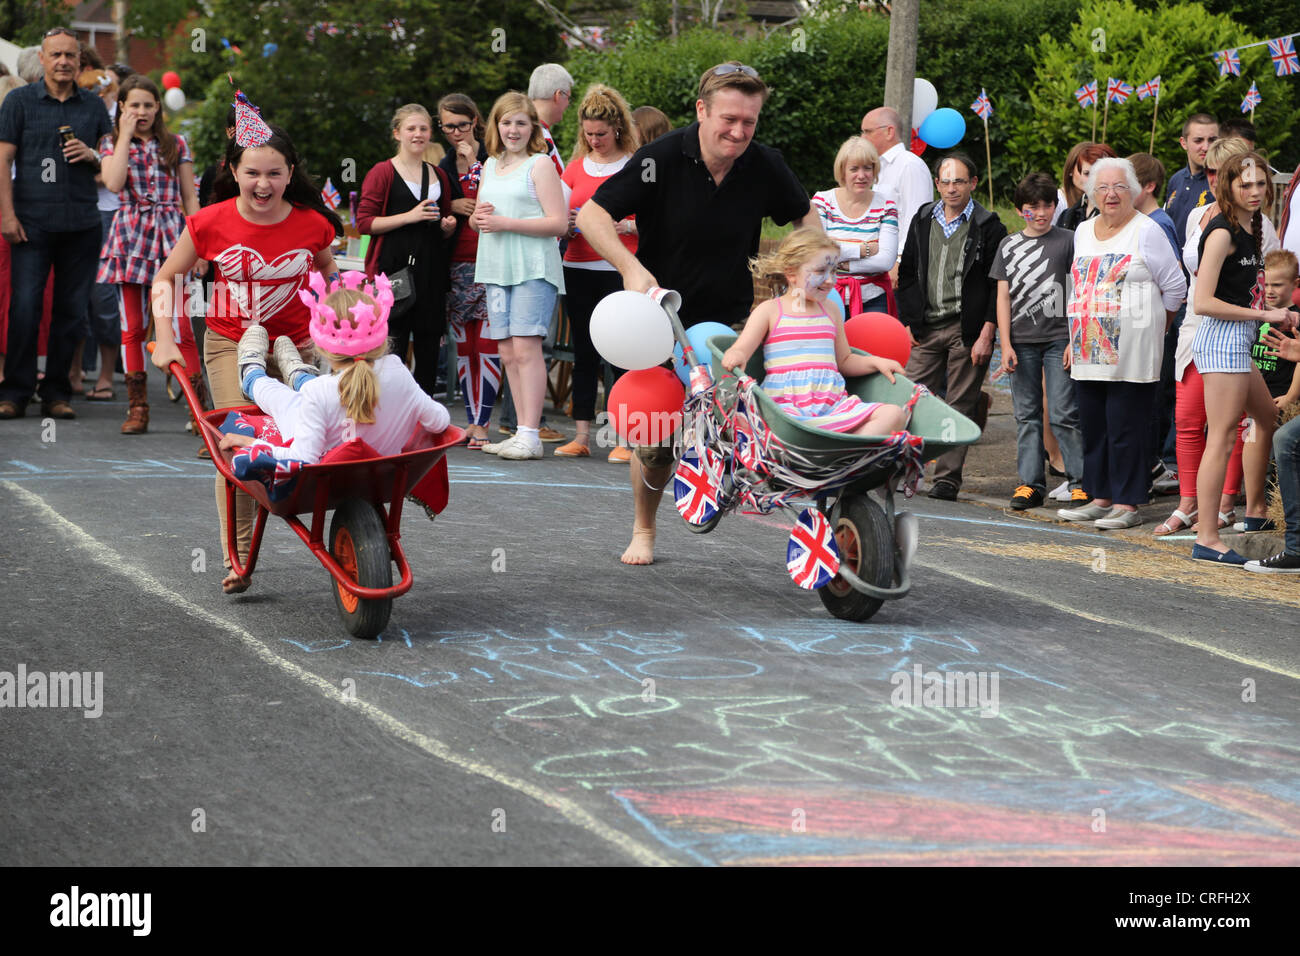 Personas que celebraban el Queen's Diamond Jubilee tomando parte en una carretilla carrera en una fiesta en la calle Surrey, Inglaterra Foto de stock